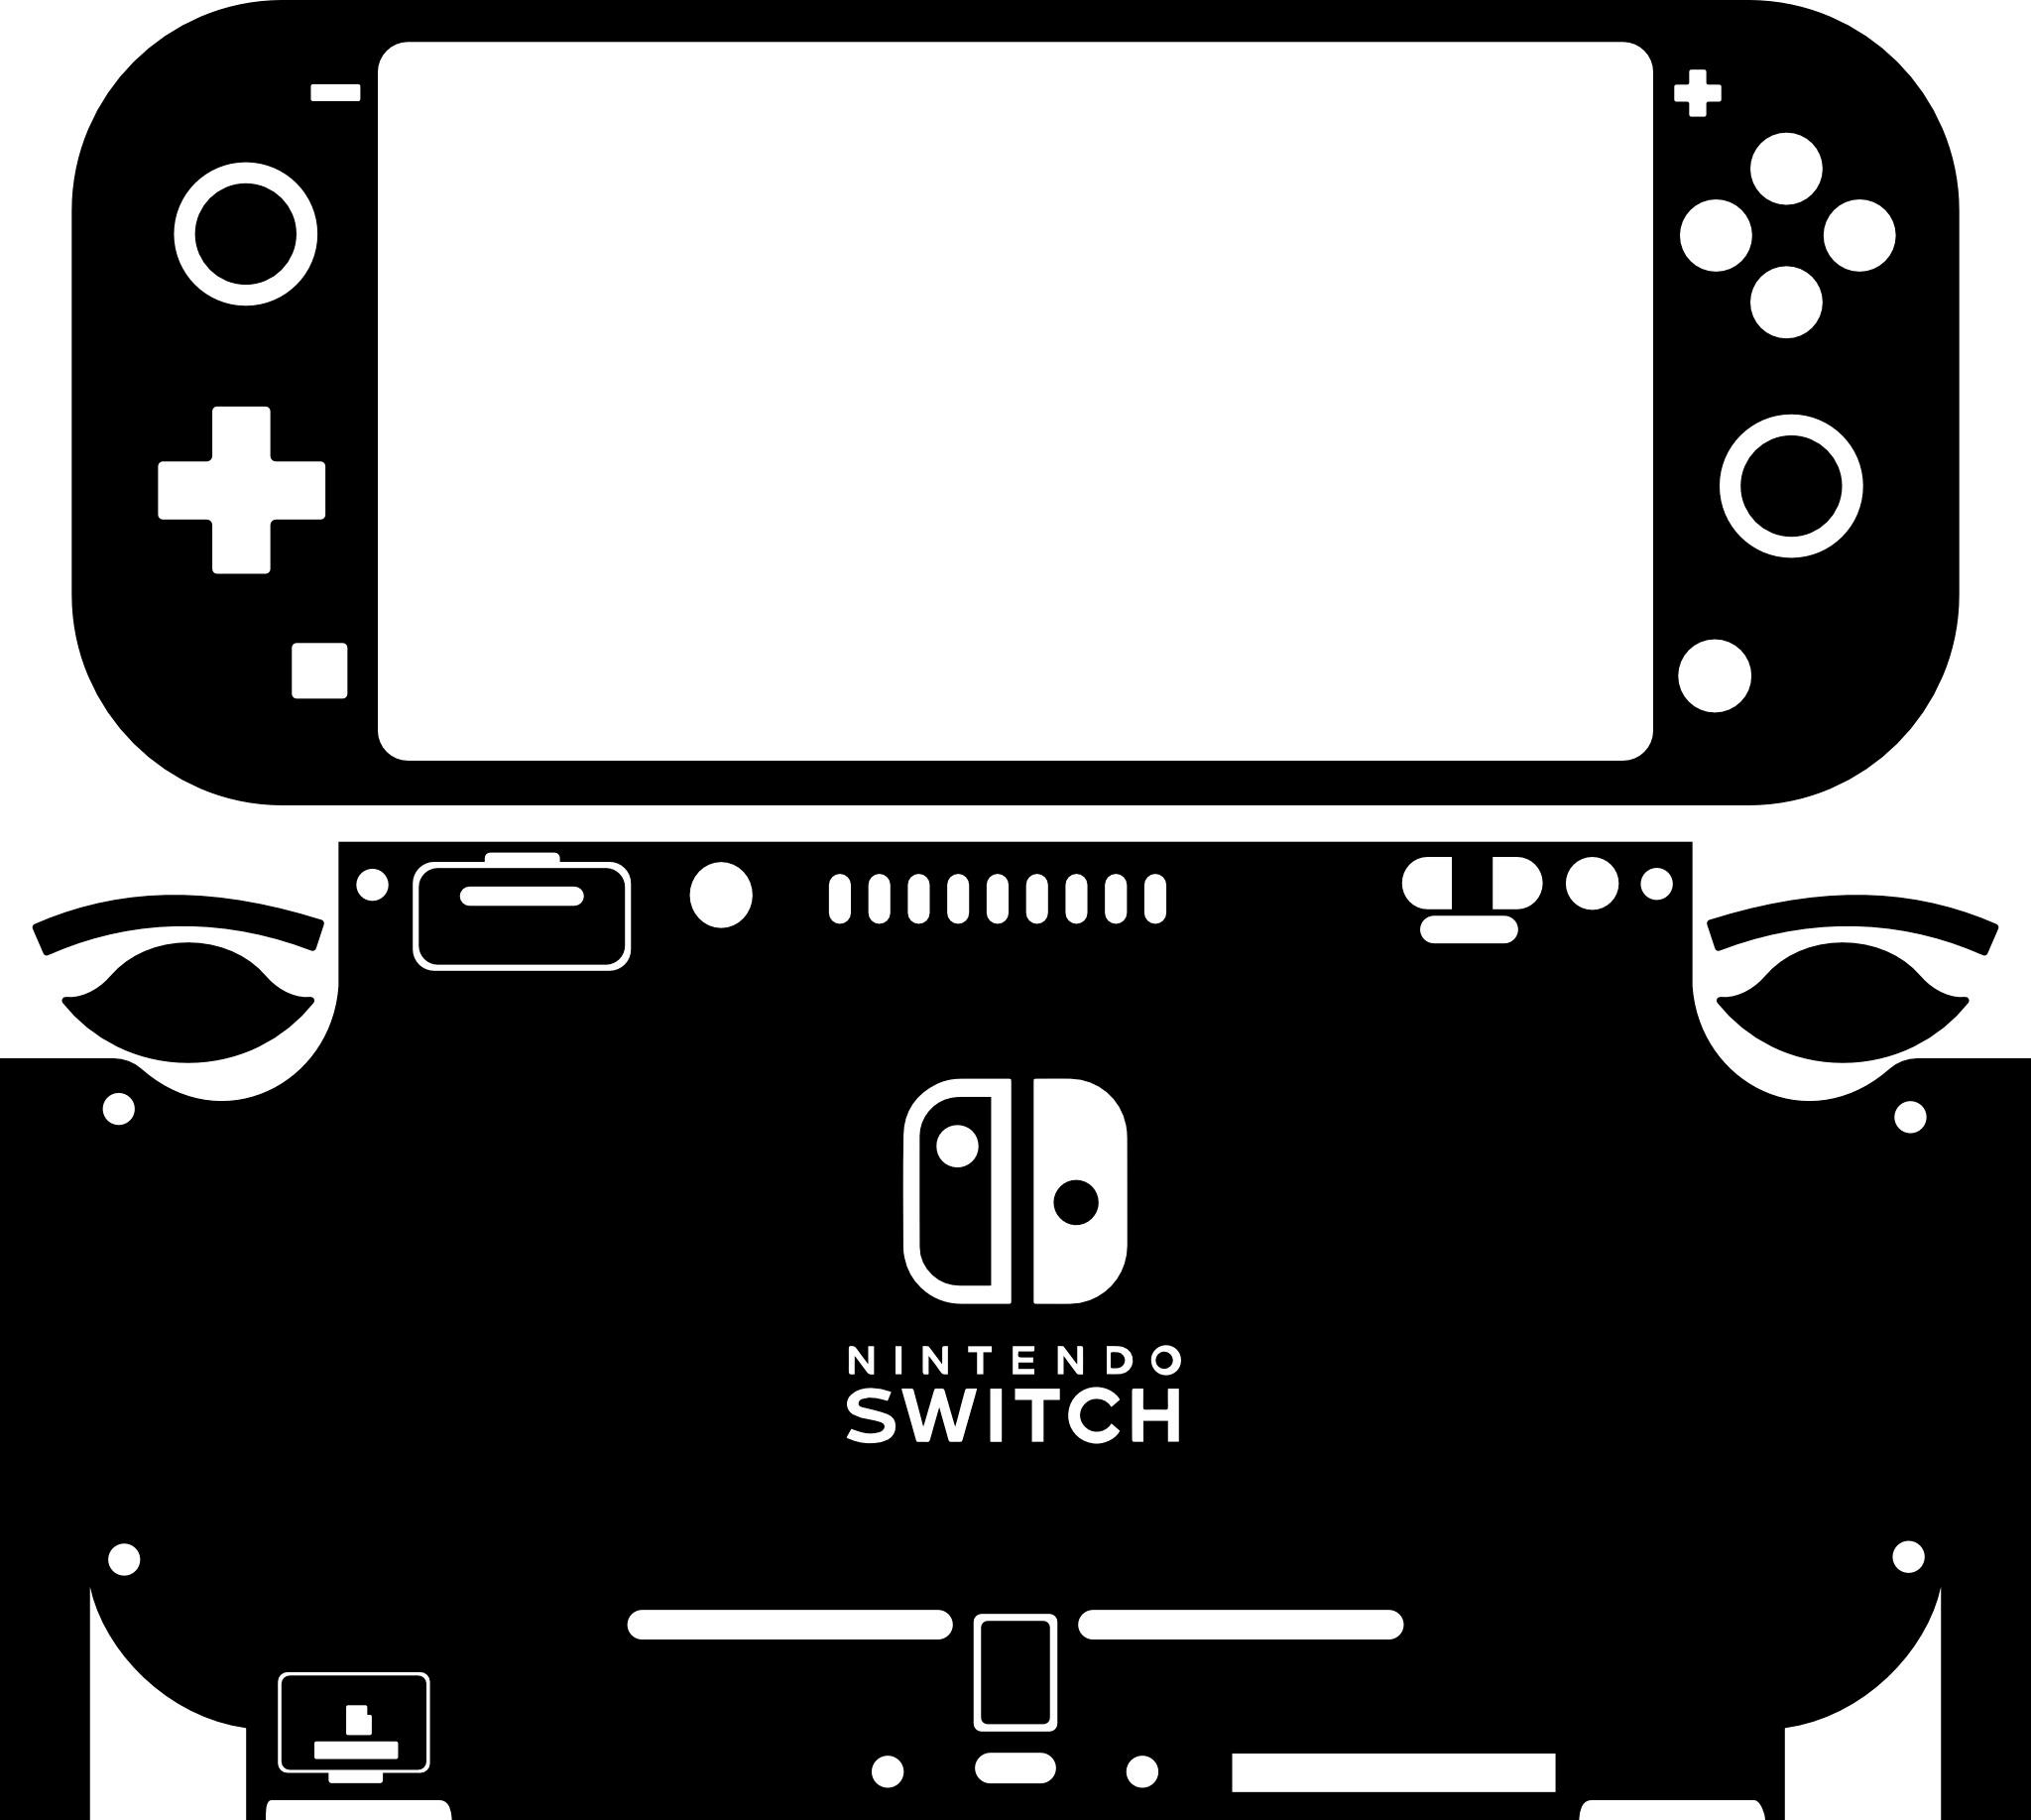 Skin decal dán Nintendo Switch Lite mẫu Corgi Hello nền xám đen (dễ dán, đã cắt sẵn)